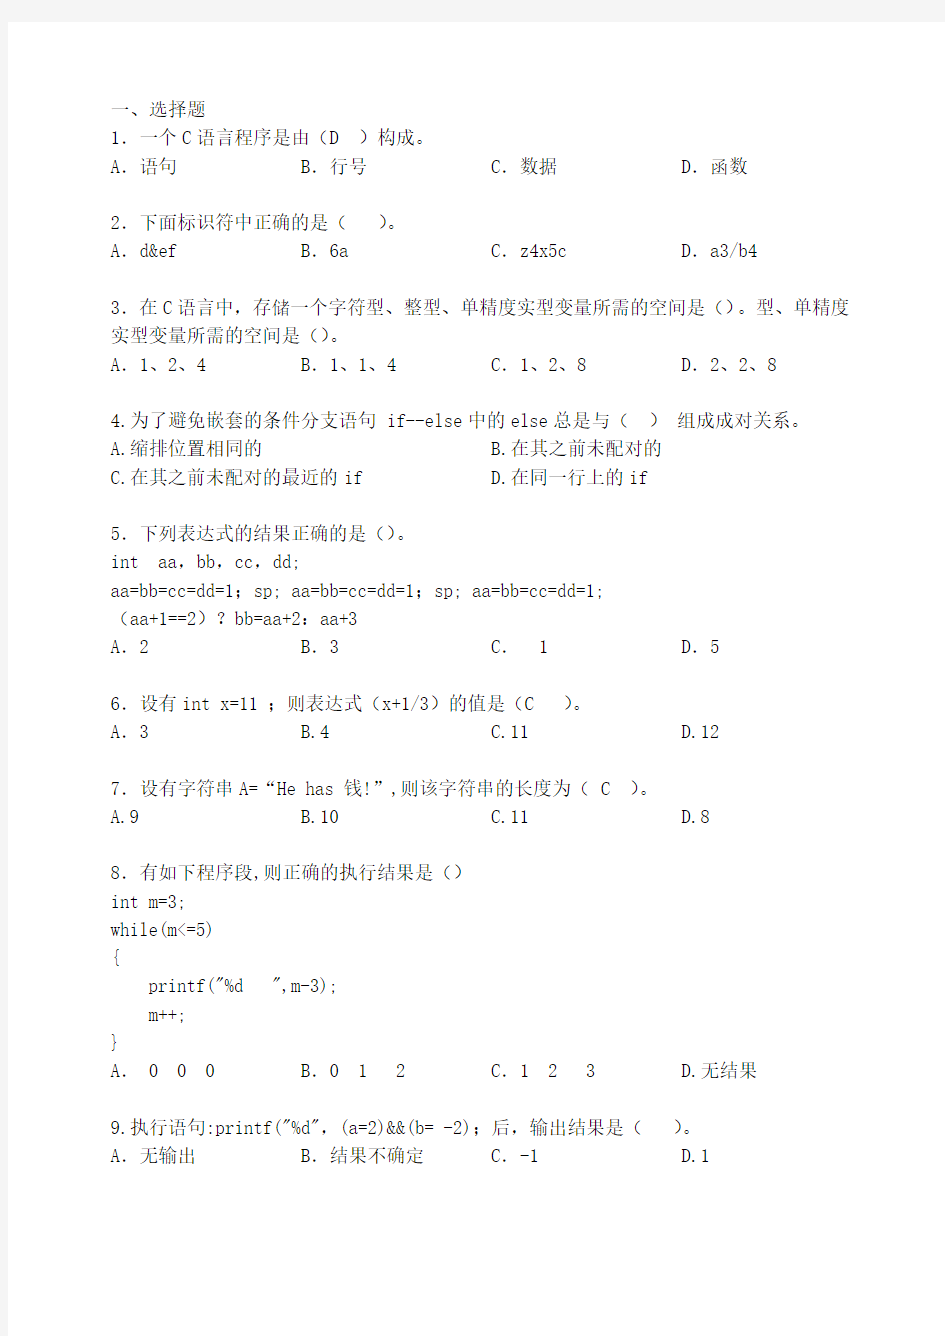 清华大学C语言程序练习题